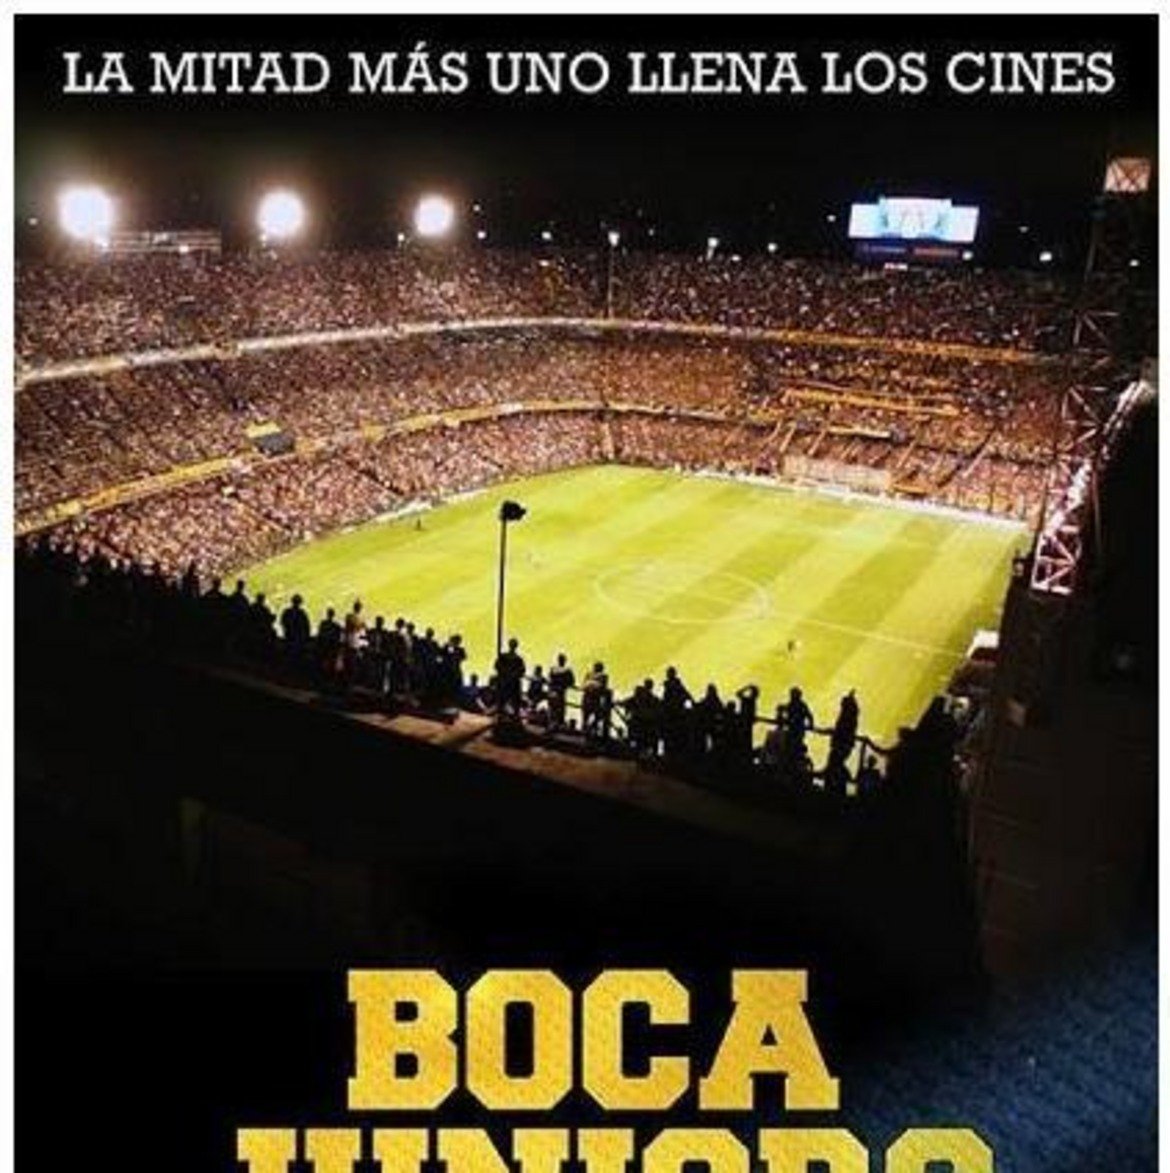 Boca Juniors: The Movie
През 2015-а най-успелият аржентински клуб плати на Netflix за филм, който проследява живота в клуба, както и славната му история. В лентата за Бока участват легенди като Диего Марадона, Карлос Тевес, Хуан Роман Рикелме и др. 